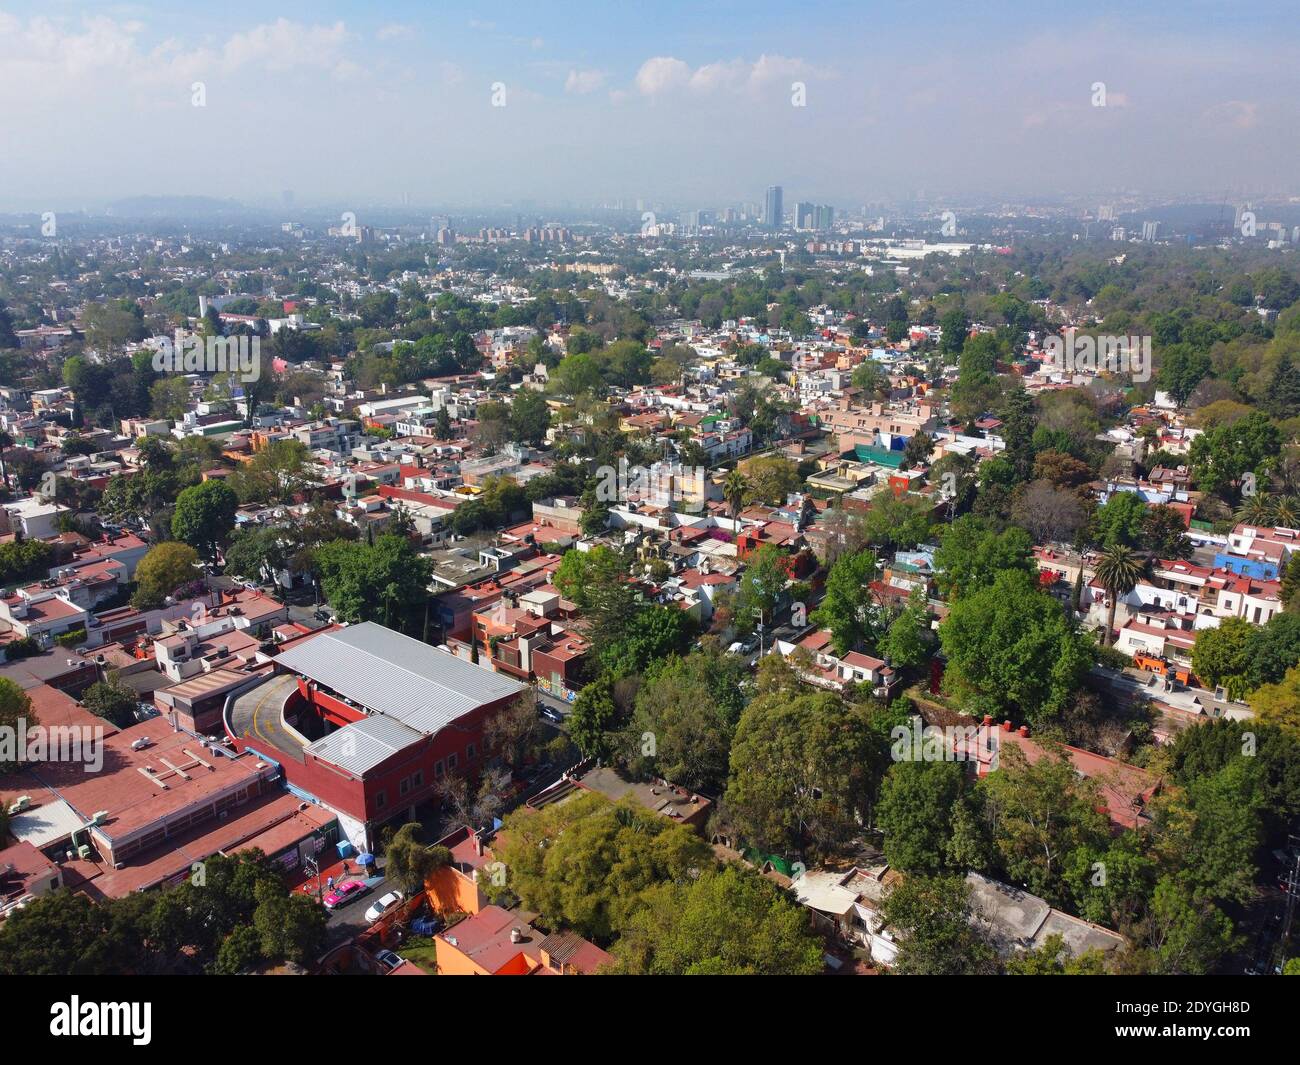 Historic center of Villa Coyoacan aerial view in Mexico City CDMX, Mexico. Stock Photo